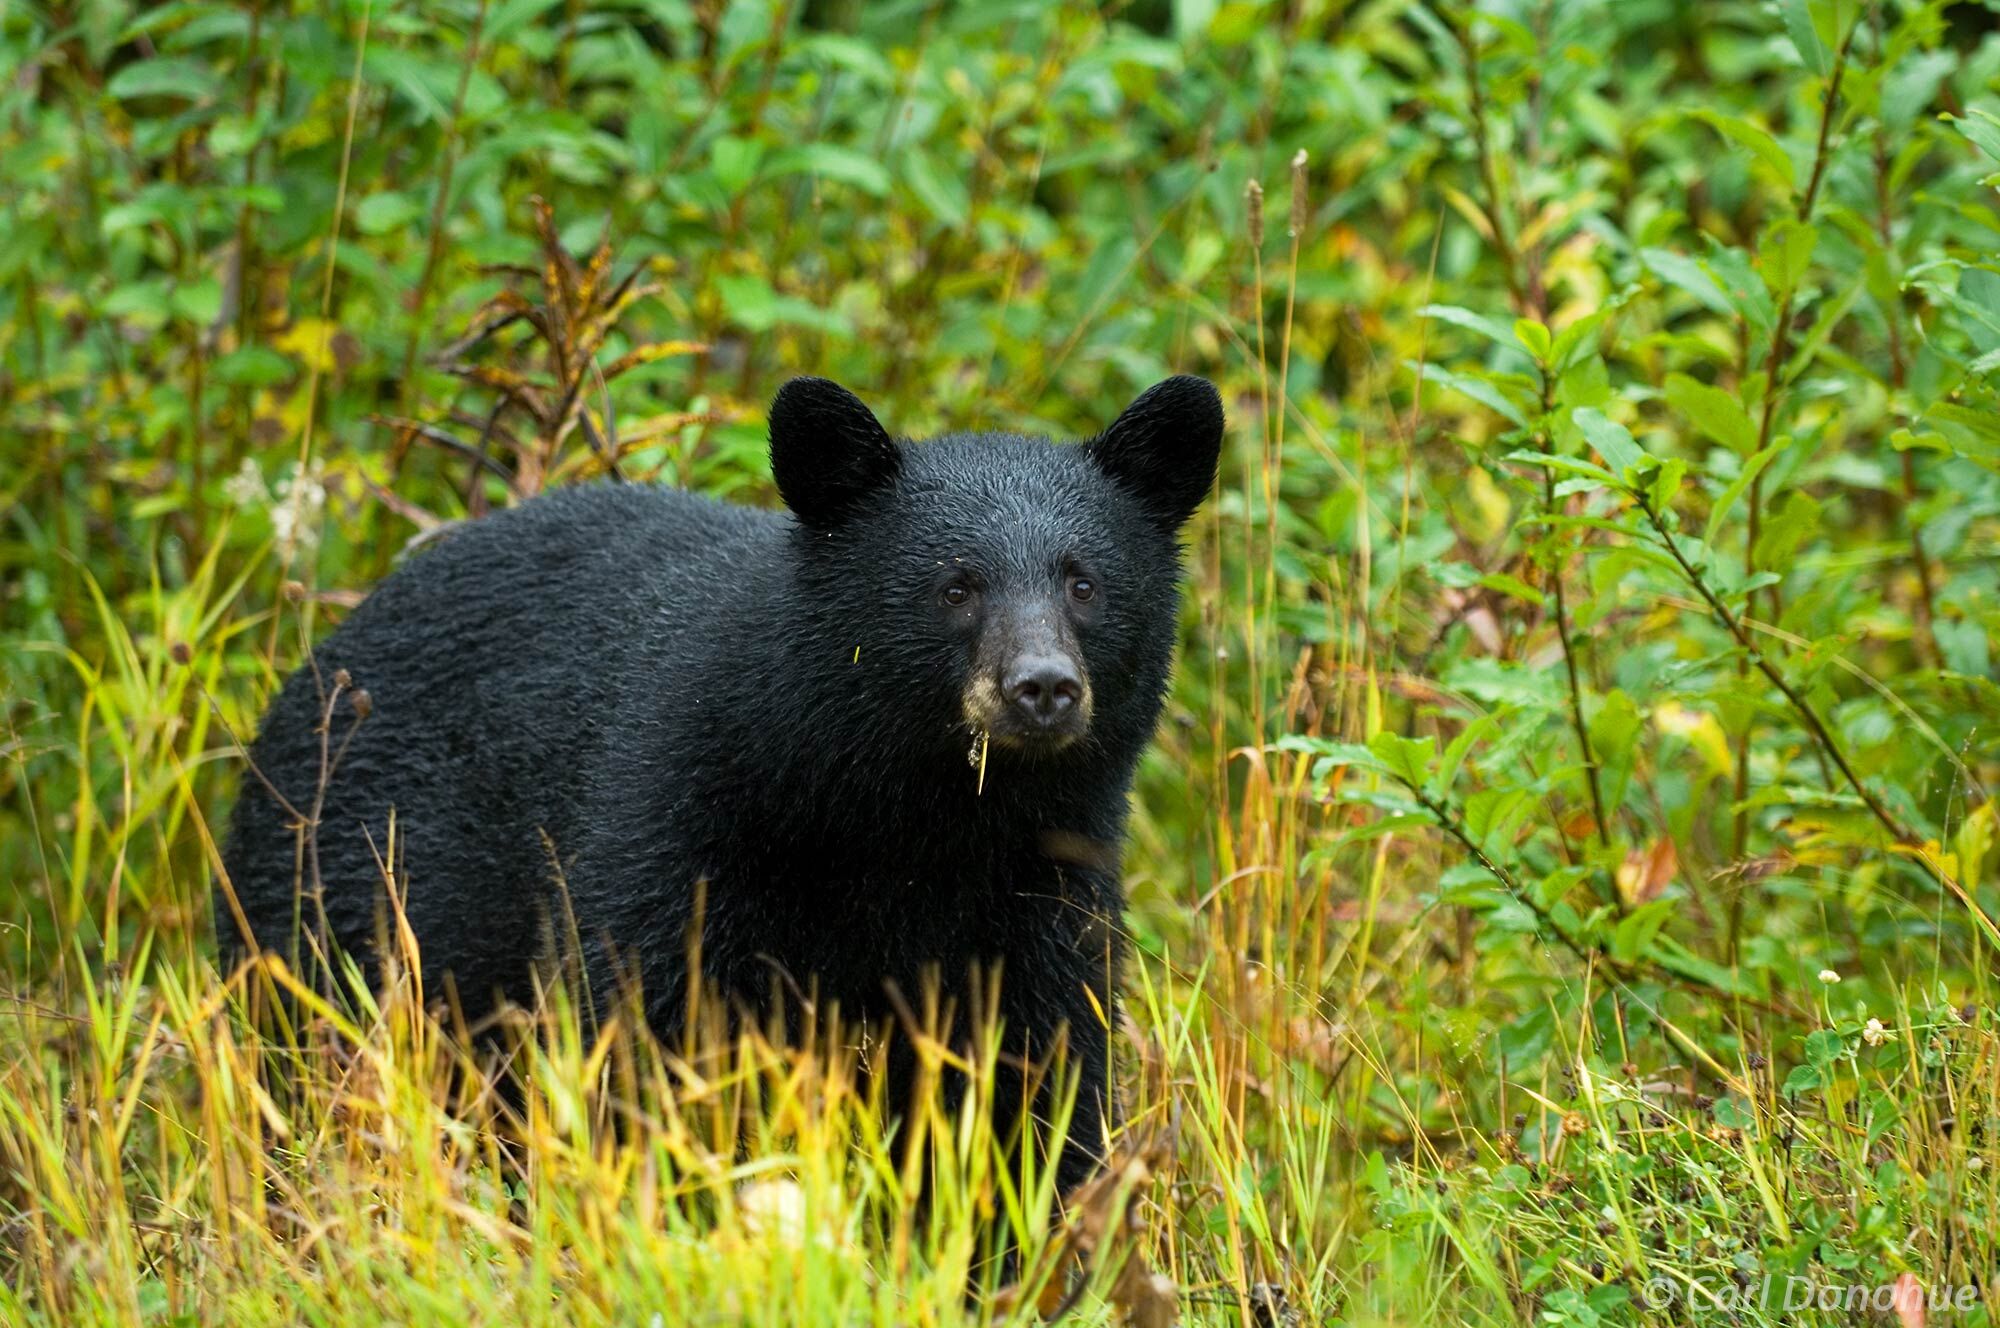 Black bear foraging in the forest, Cassiar Highway, British Columbia, Canada. Ursus americanus.